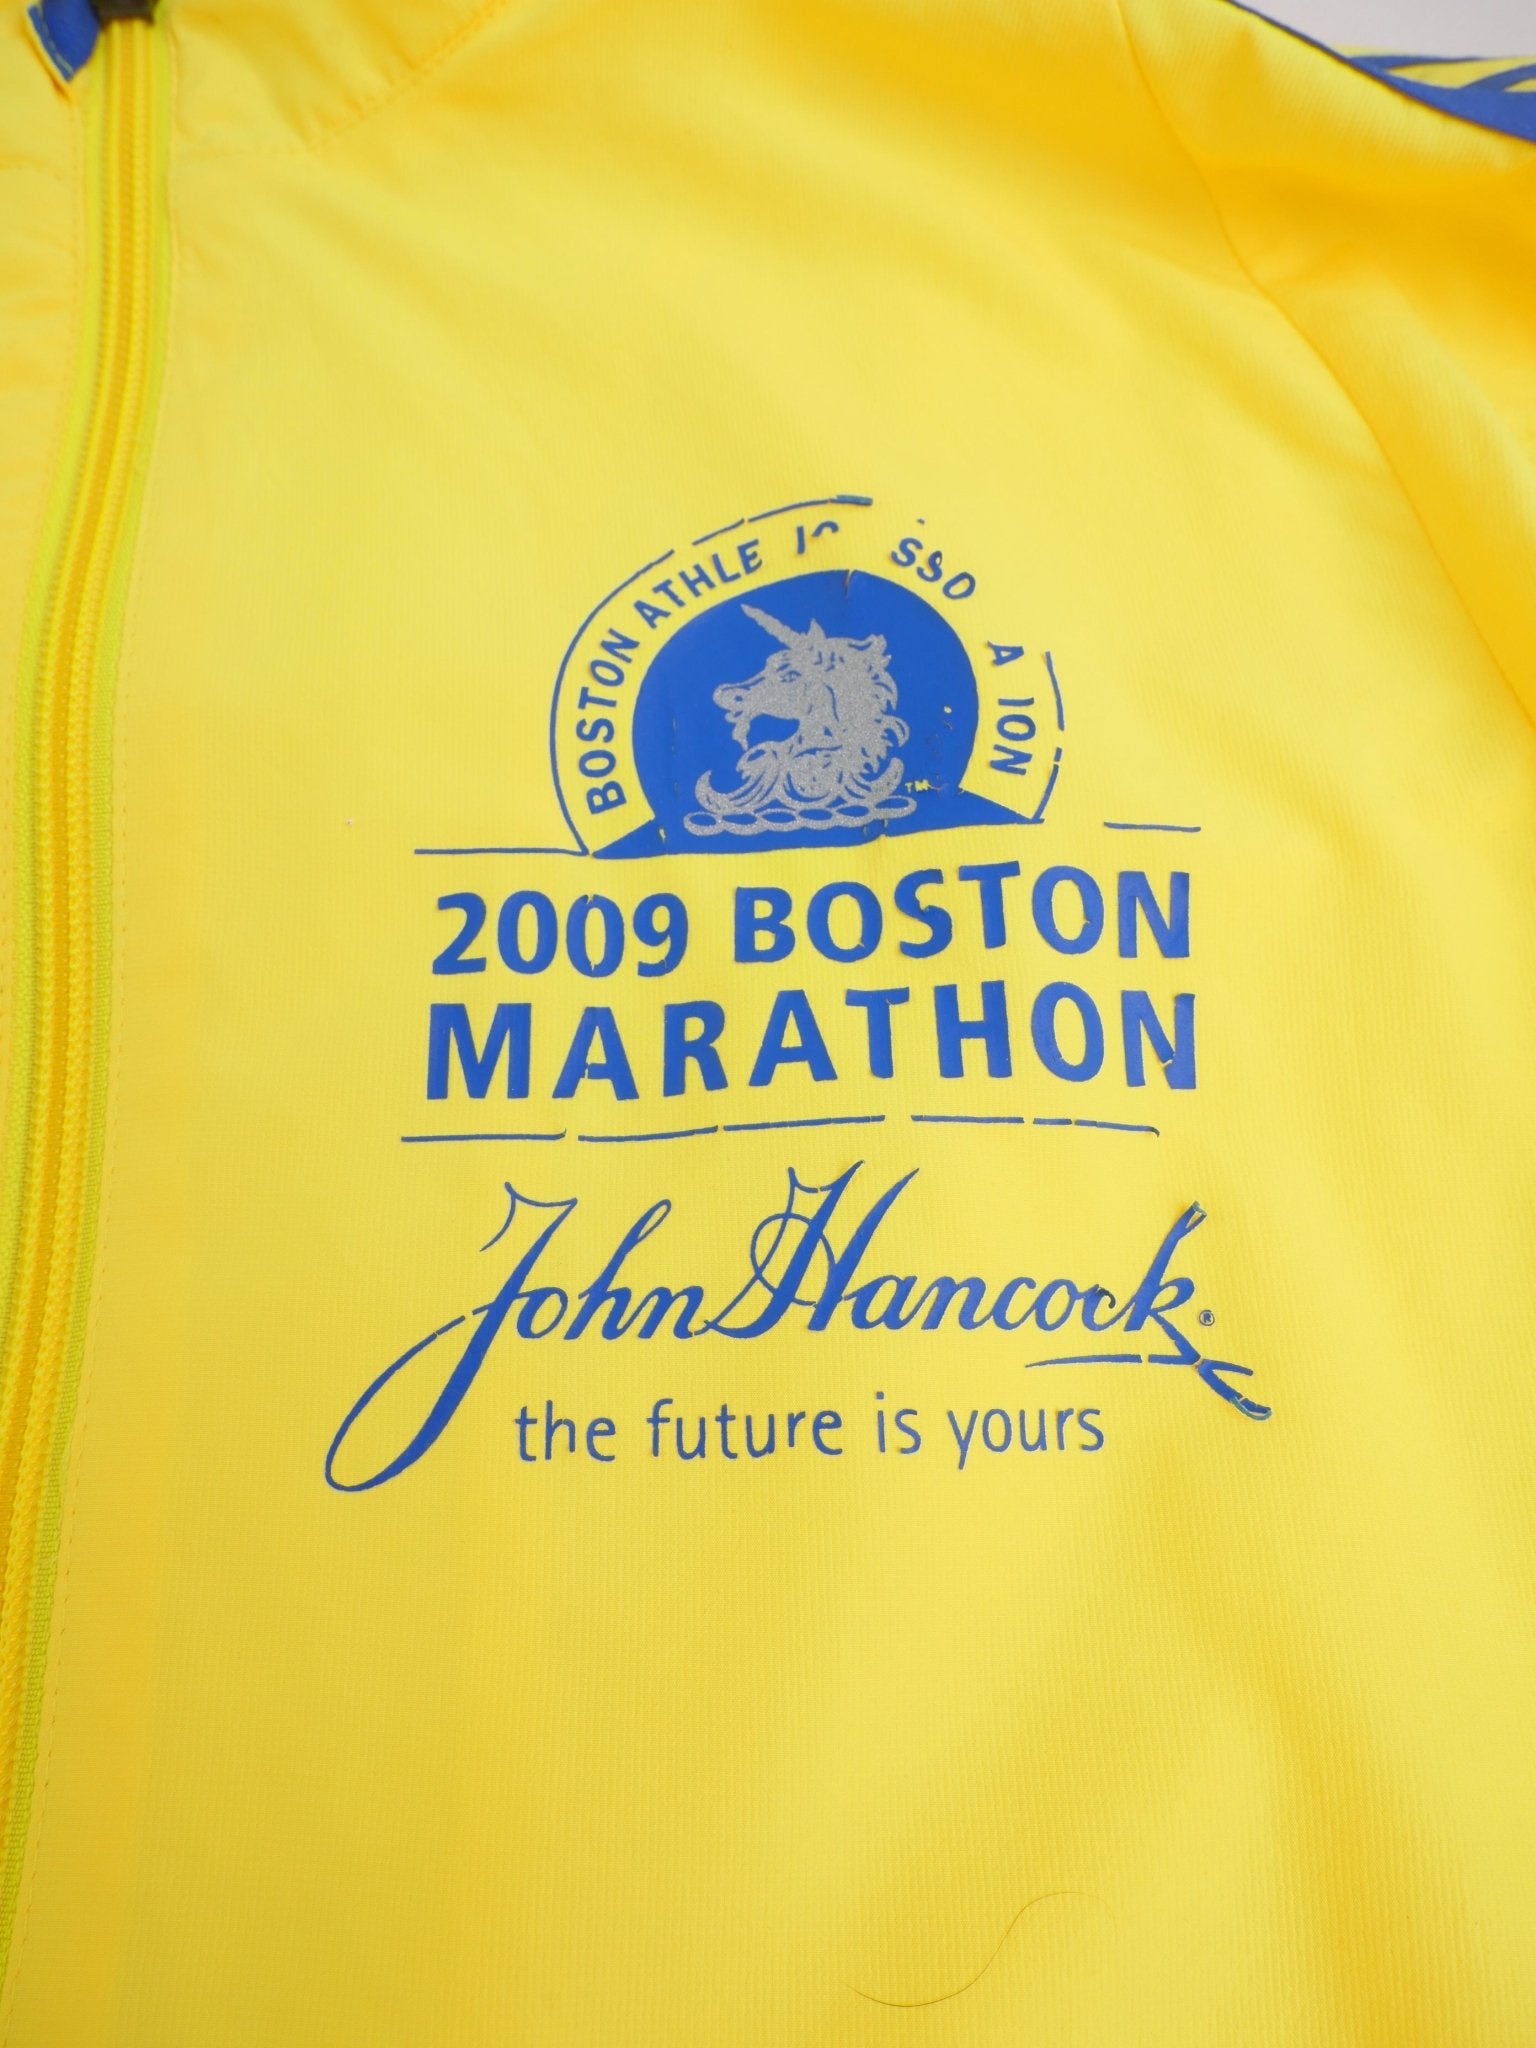 Adidas printed Boston 2009 Marathon Vintage Track Jacke - Peeces